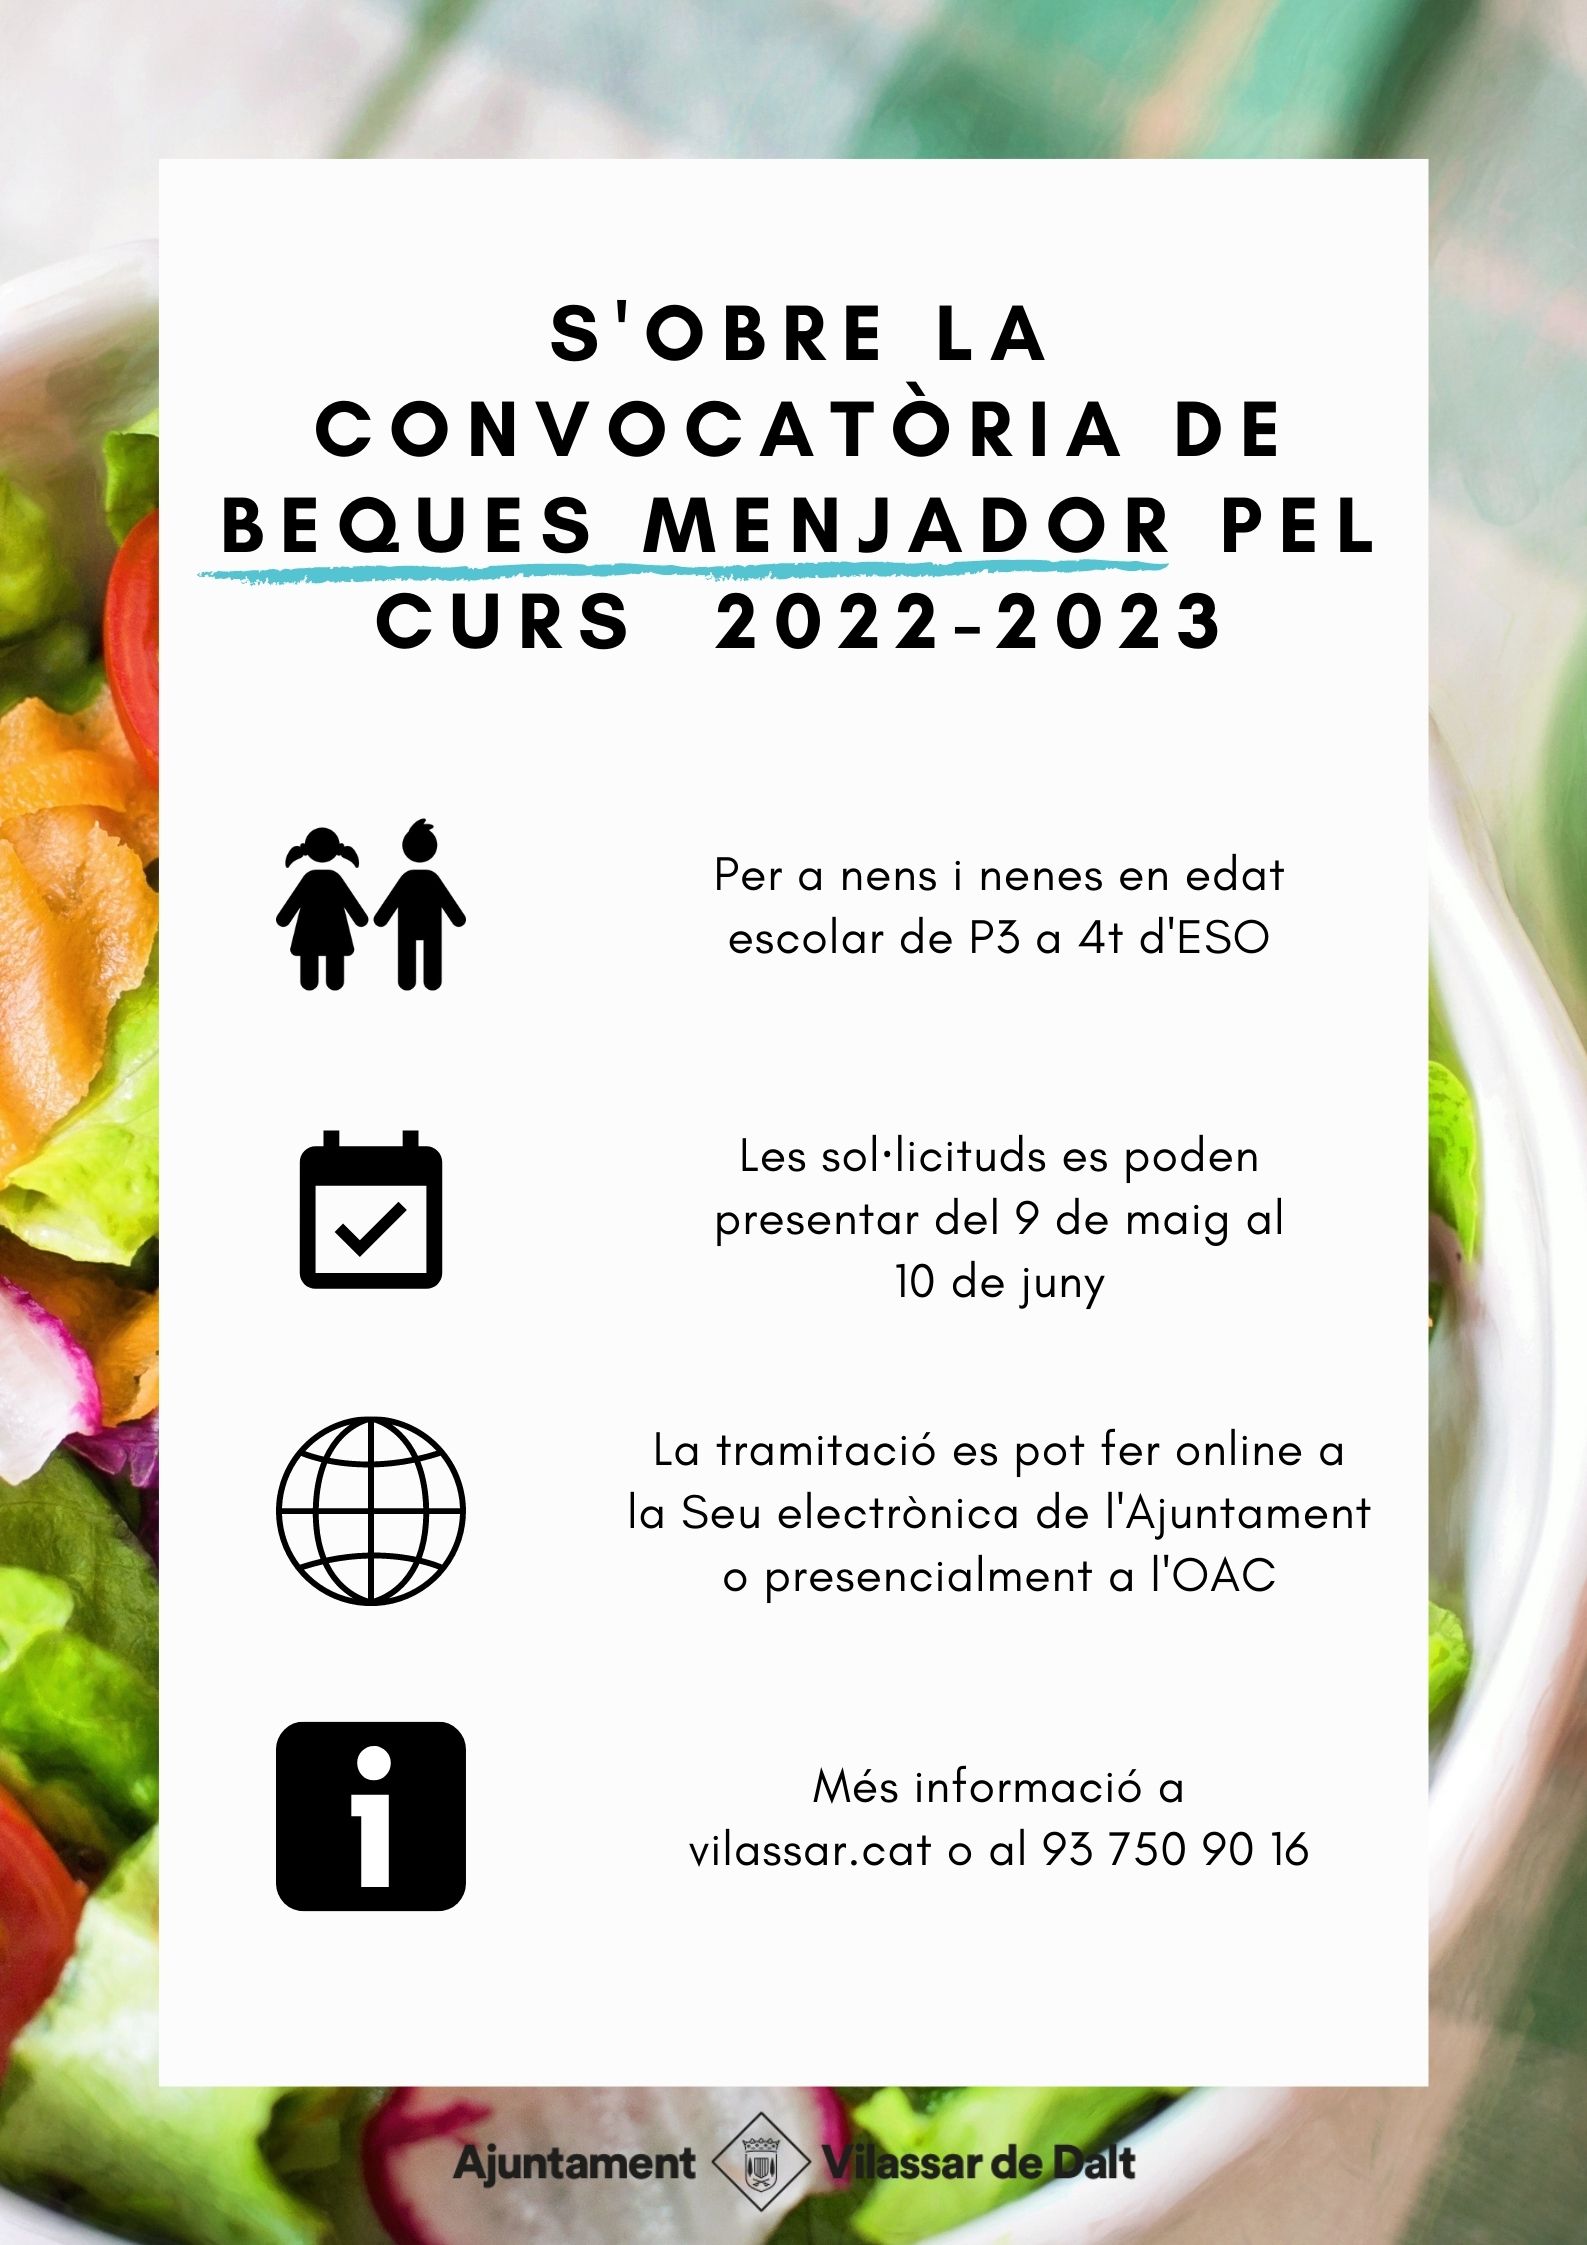 El 9 de maig s'obre el període per sol·licitar les beques menjador per al curs 2022 - 2023